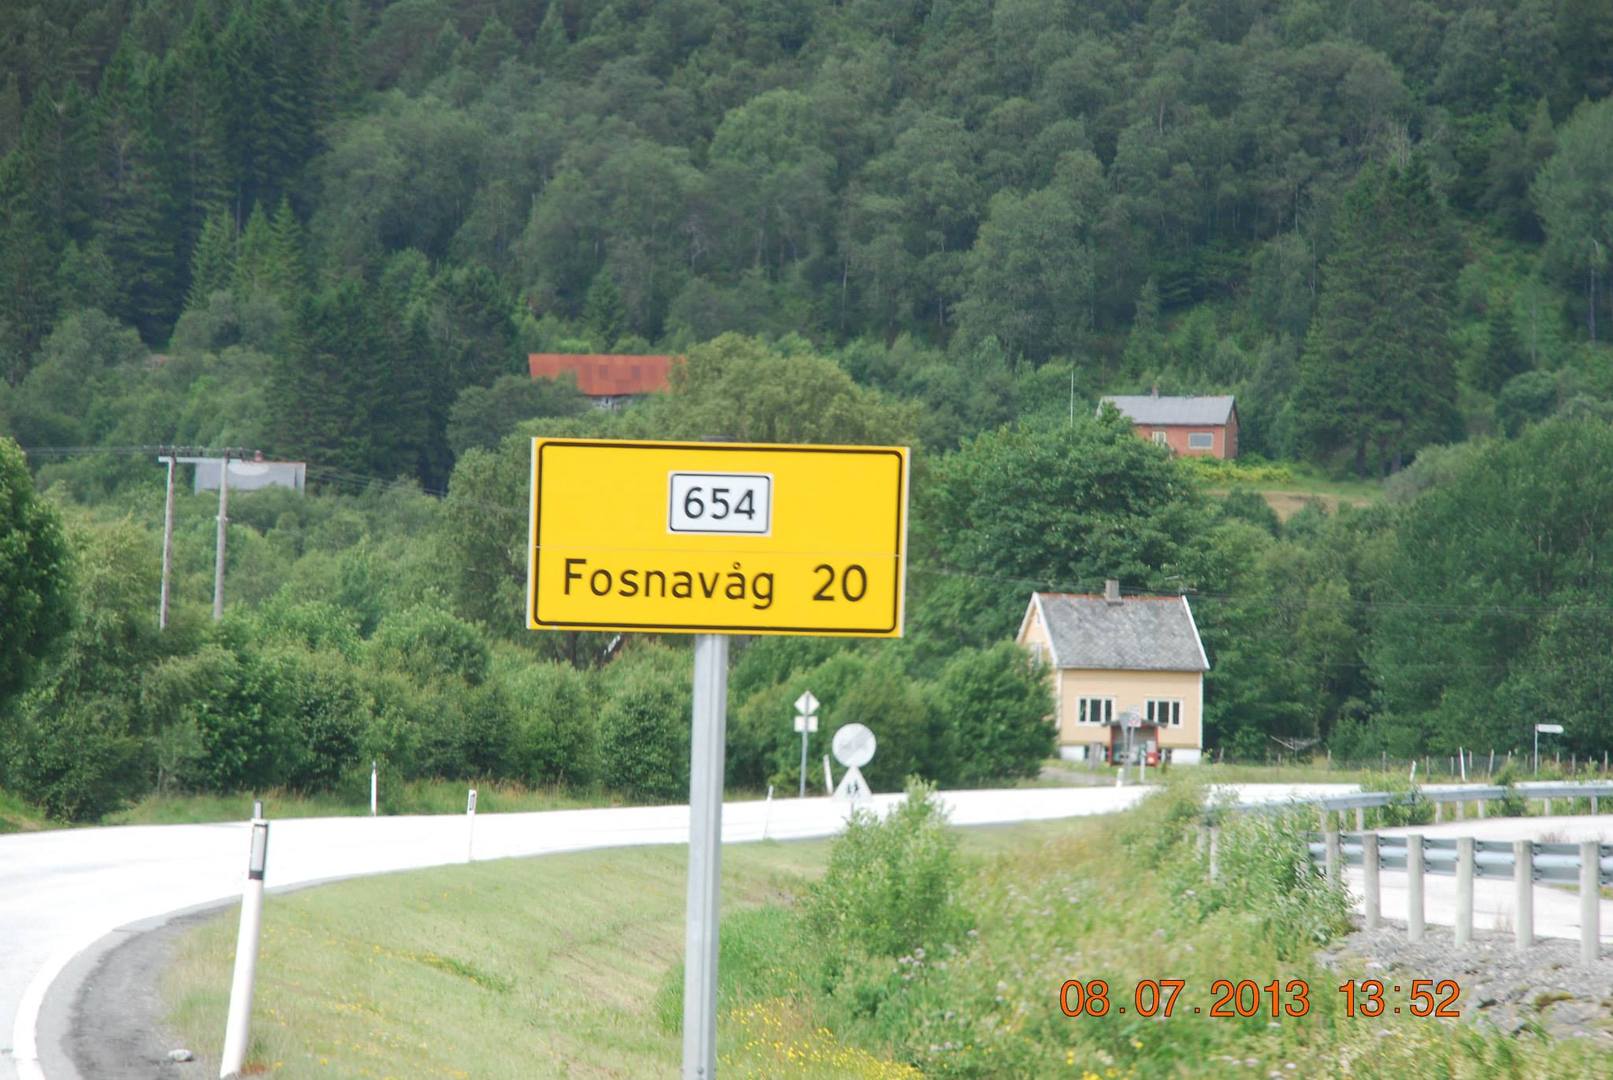 הכיוון הואFosnavåg